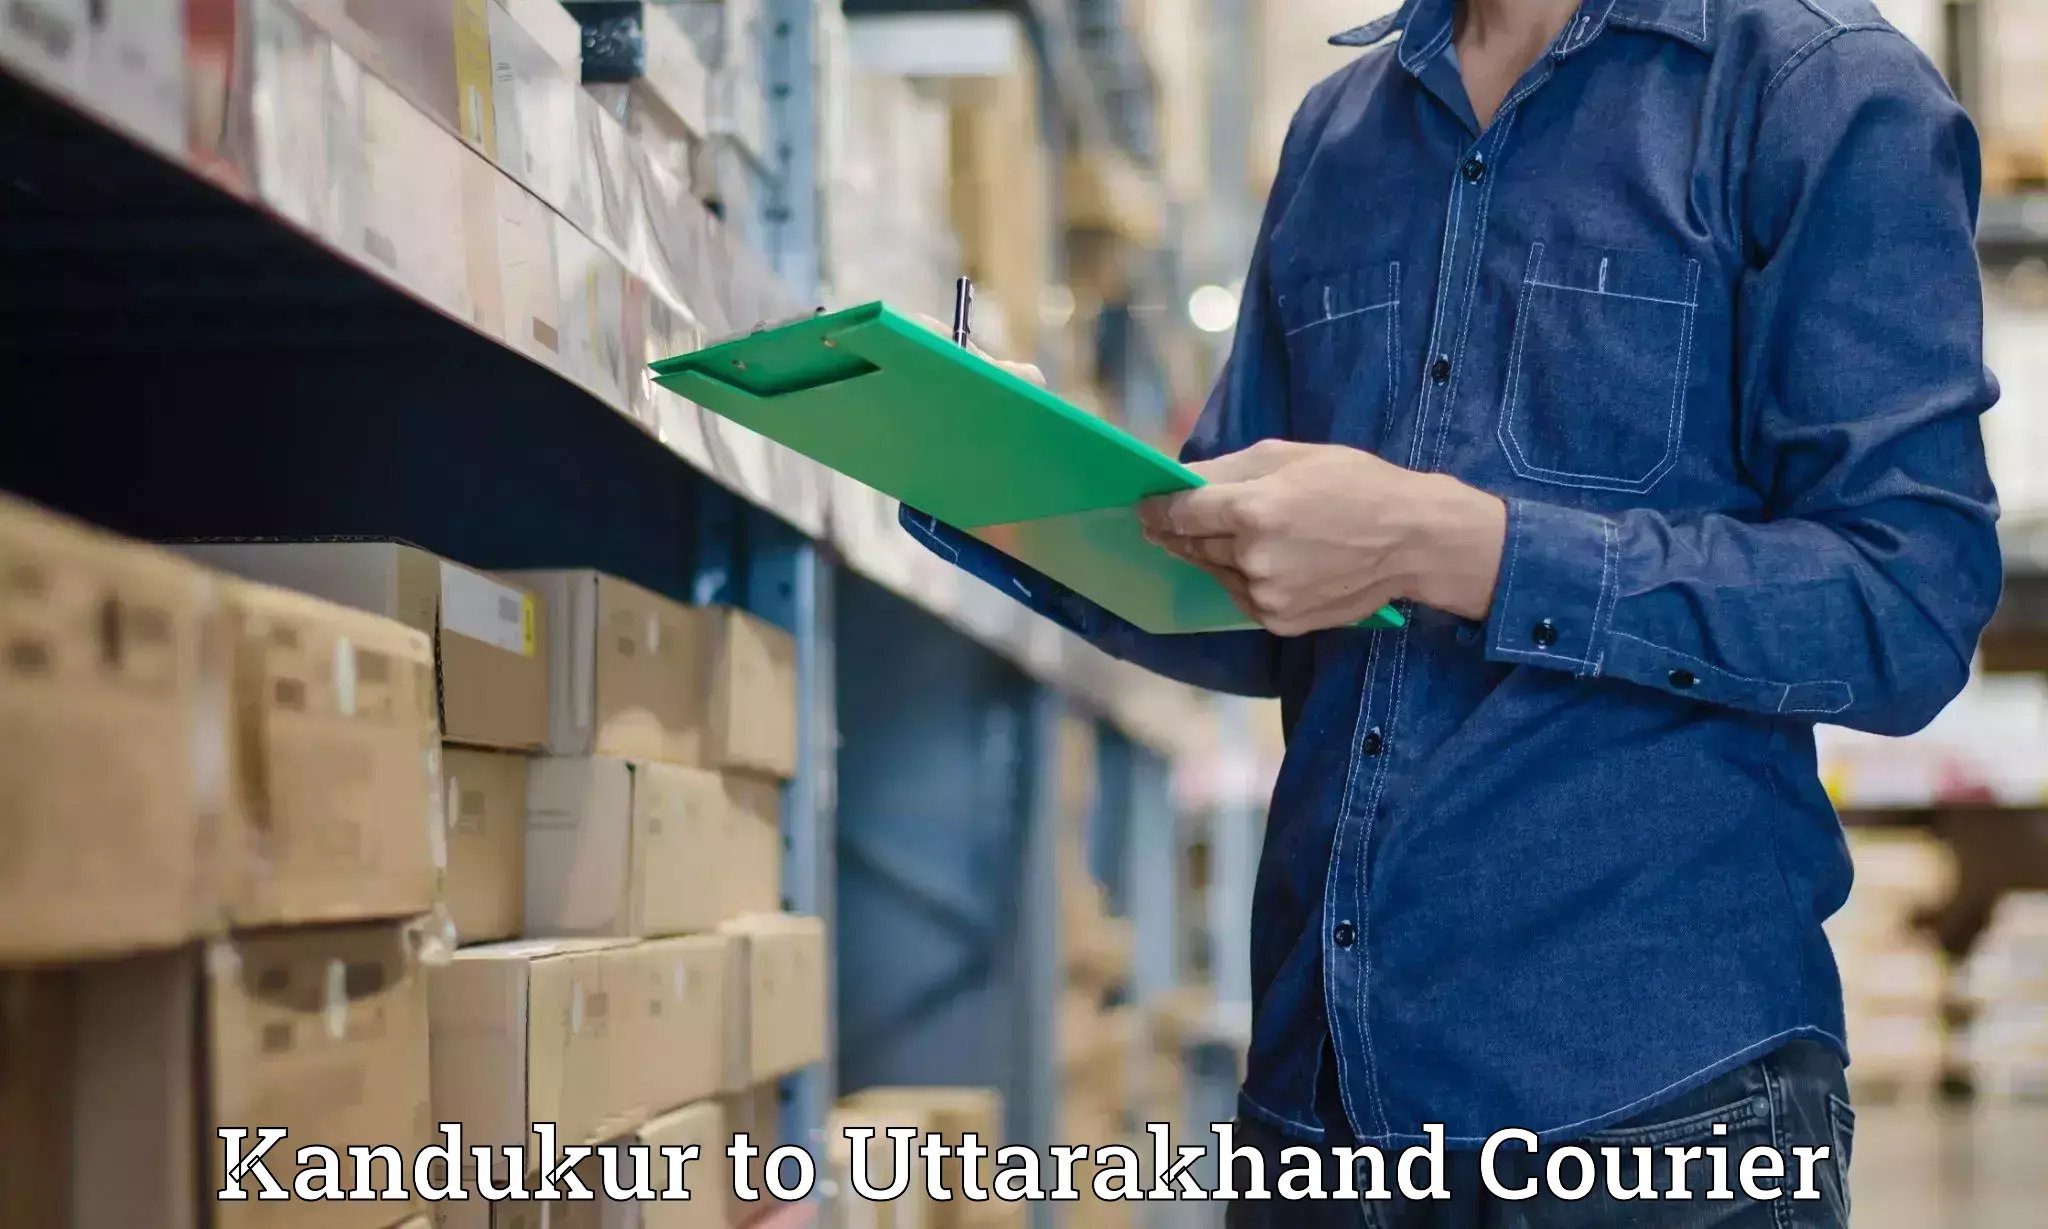 Courier service comparison Kandukur to Didihat